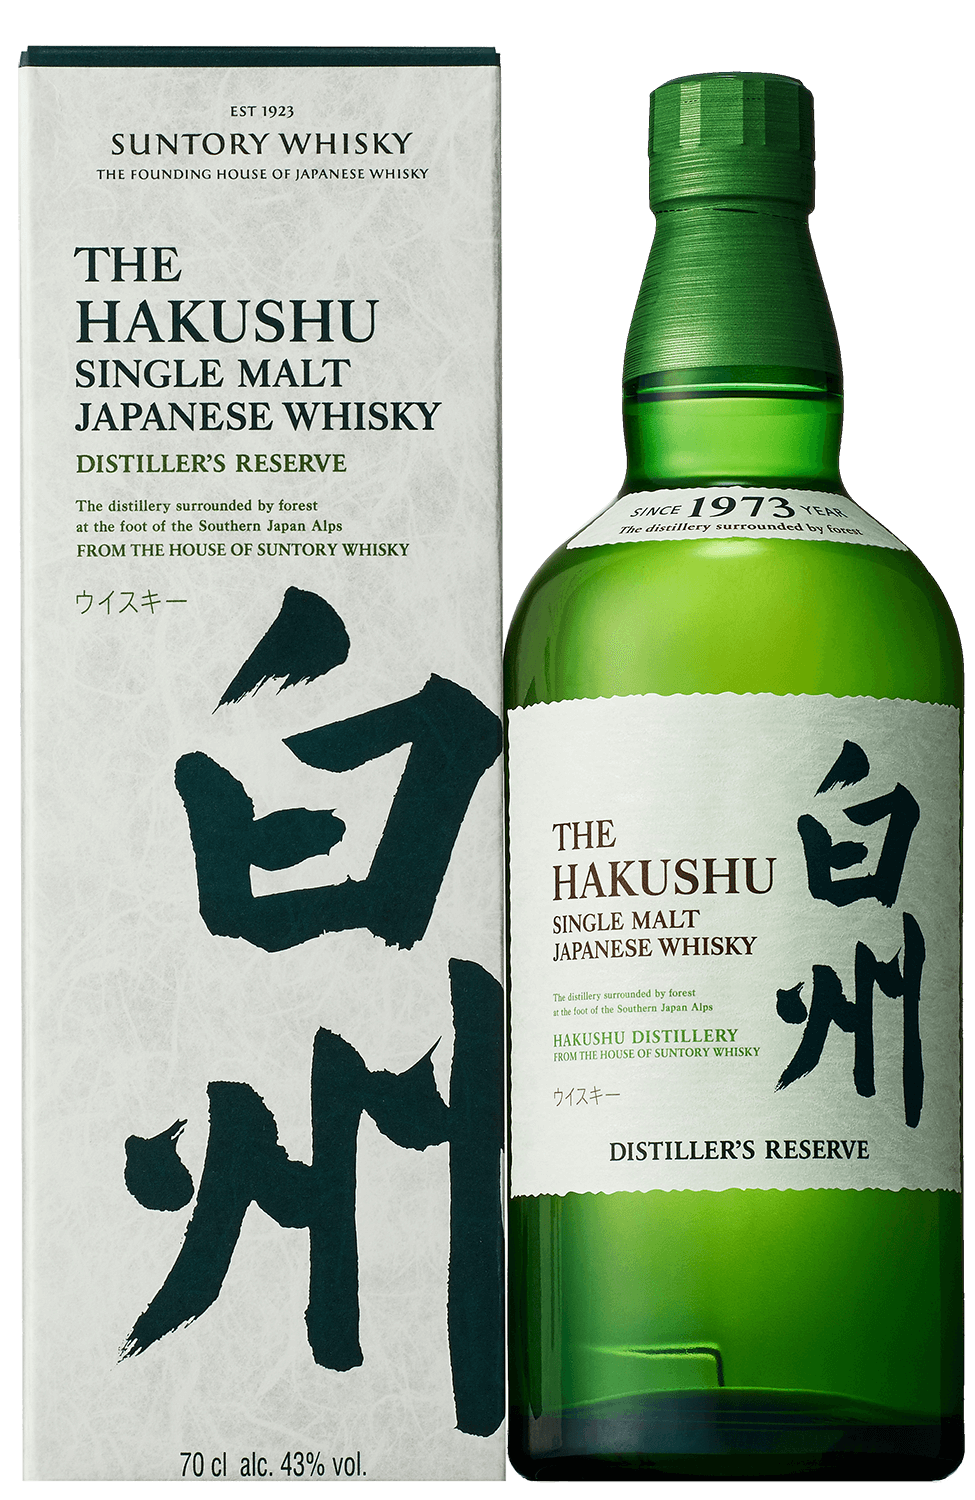 Suntory Hakushu Distiller's Reserve Single Malt Japanese Whisky (gift box)